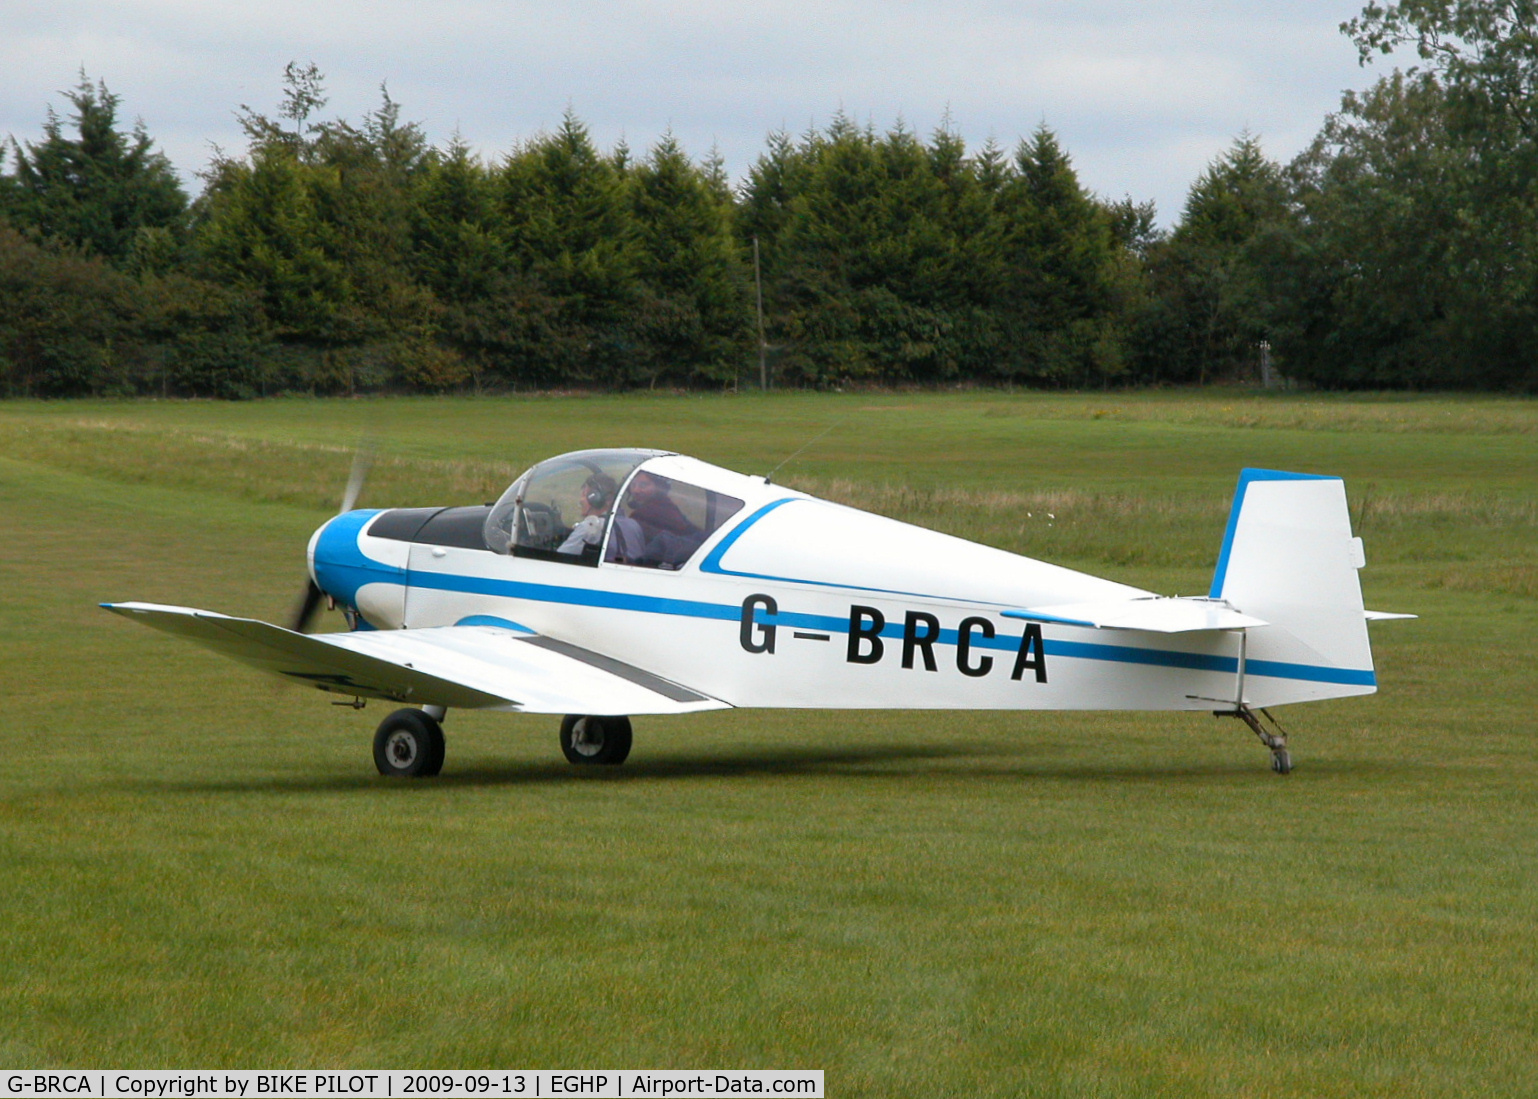 G-BRCA, 1963 Jodel D-112 C/N 1203, POPHAM RUSSIAN AIRCRAFT FLY-IN. PREV. REG. F-BLIU. 